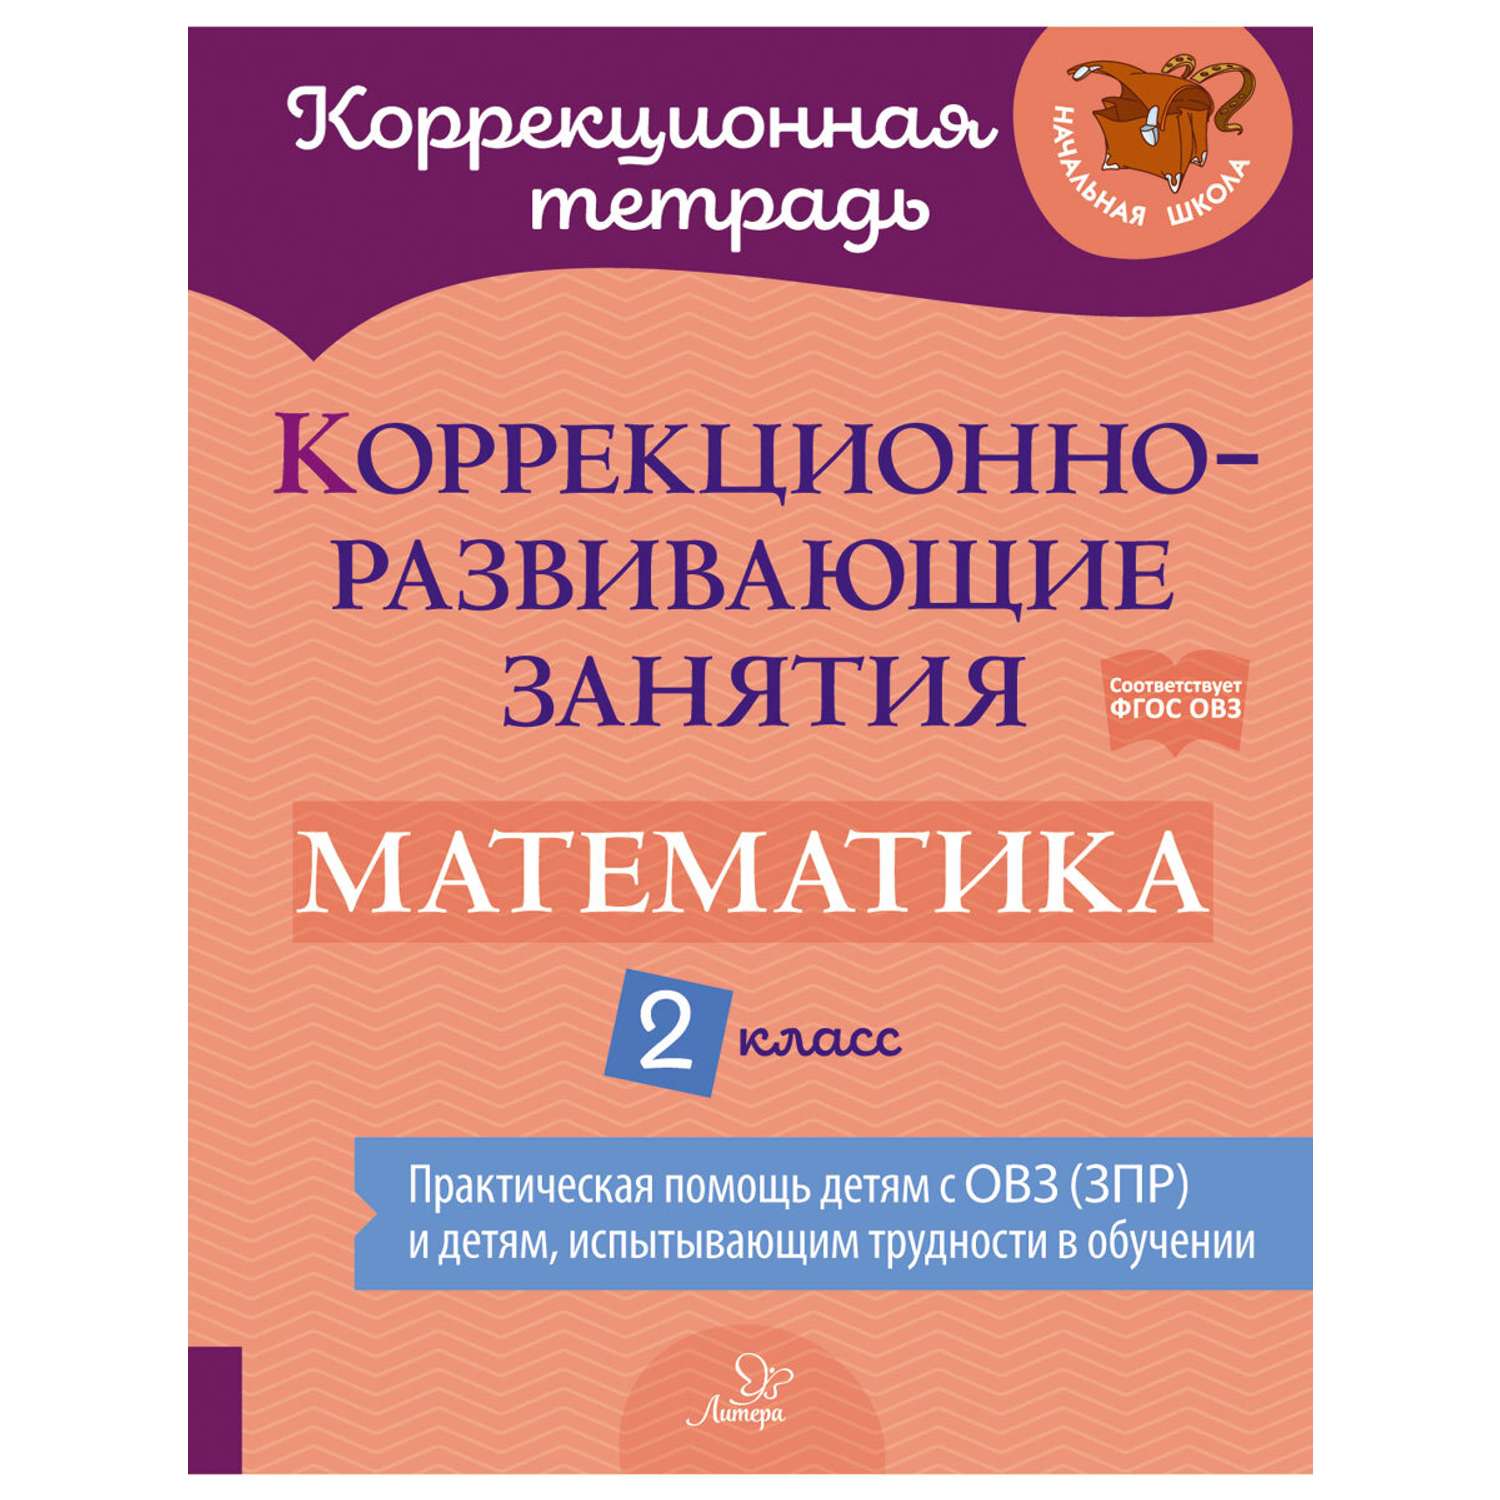 Книга ИД Литера Коррекционно-развивающие занятия. Математика. 2 класс - фото 1